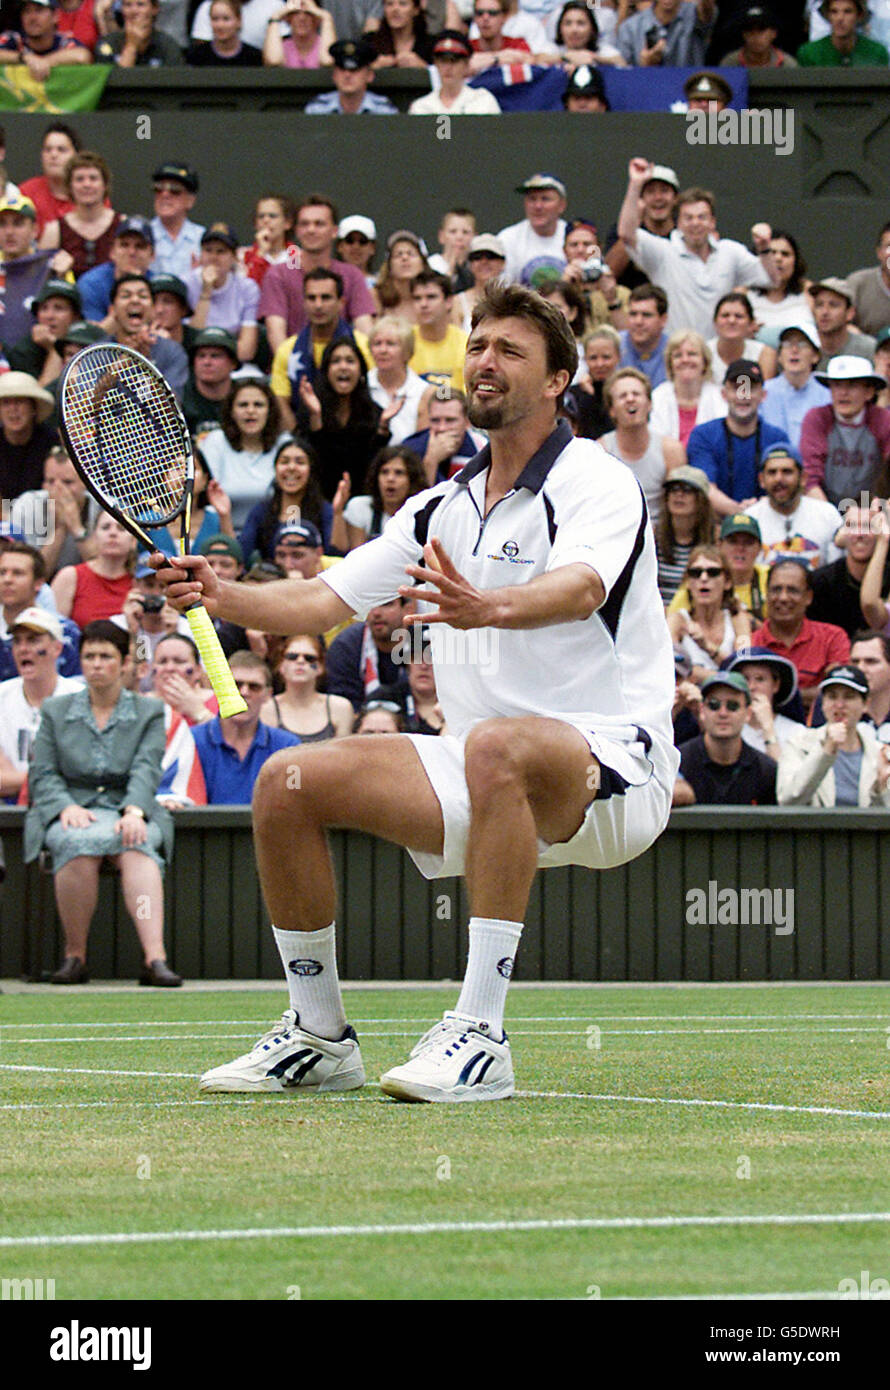 Wimbledon Ivanisevic v Rafter Stock Photo - Alamy